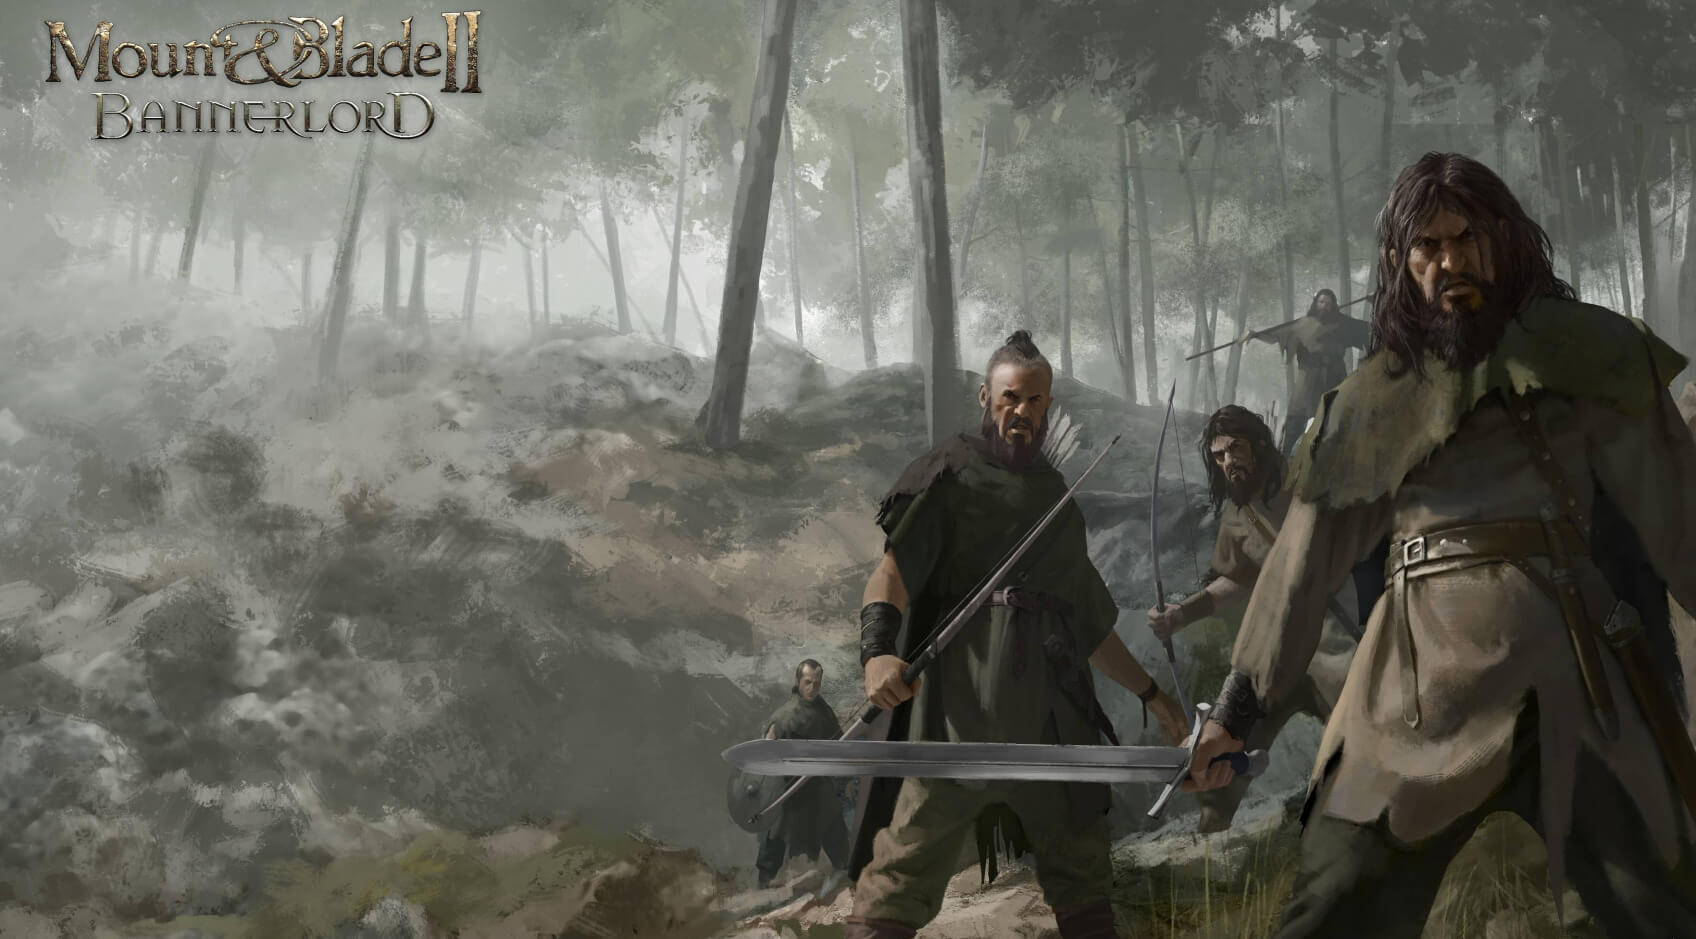 يوجد الآن Dismemberment Mod لـ Mount & Blade II: Bannerlord يمكنك تنزيله 319